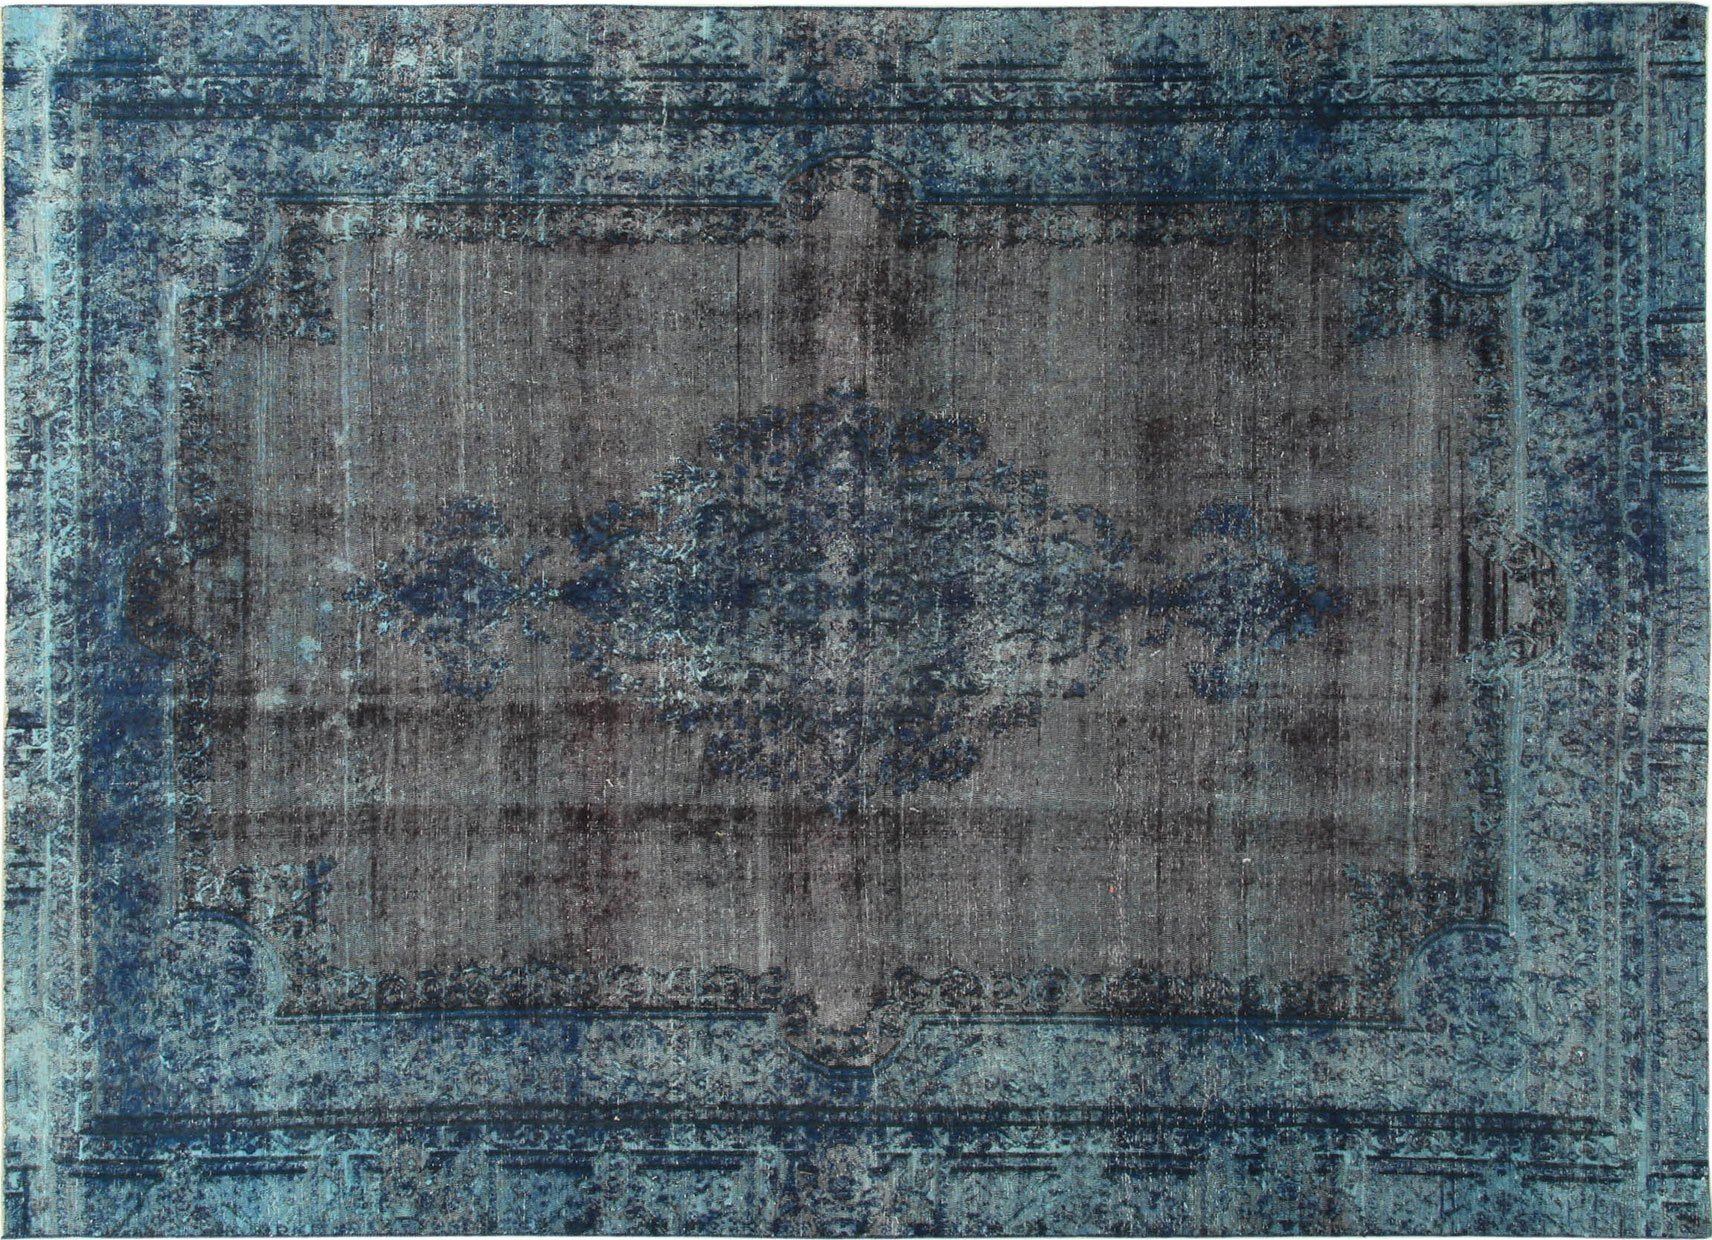 LaDatina_handmadecarpets_vintage